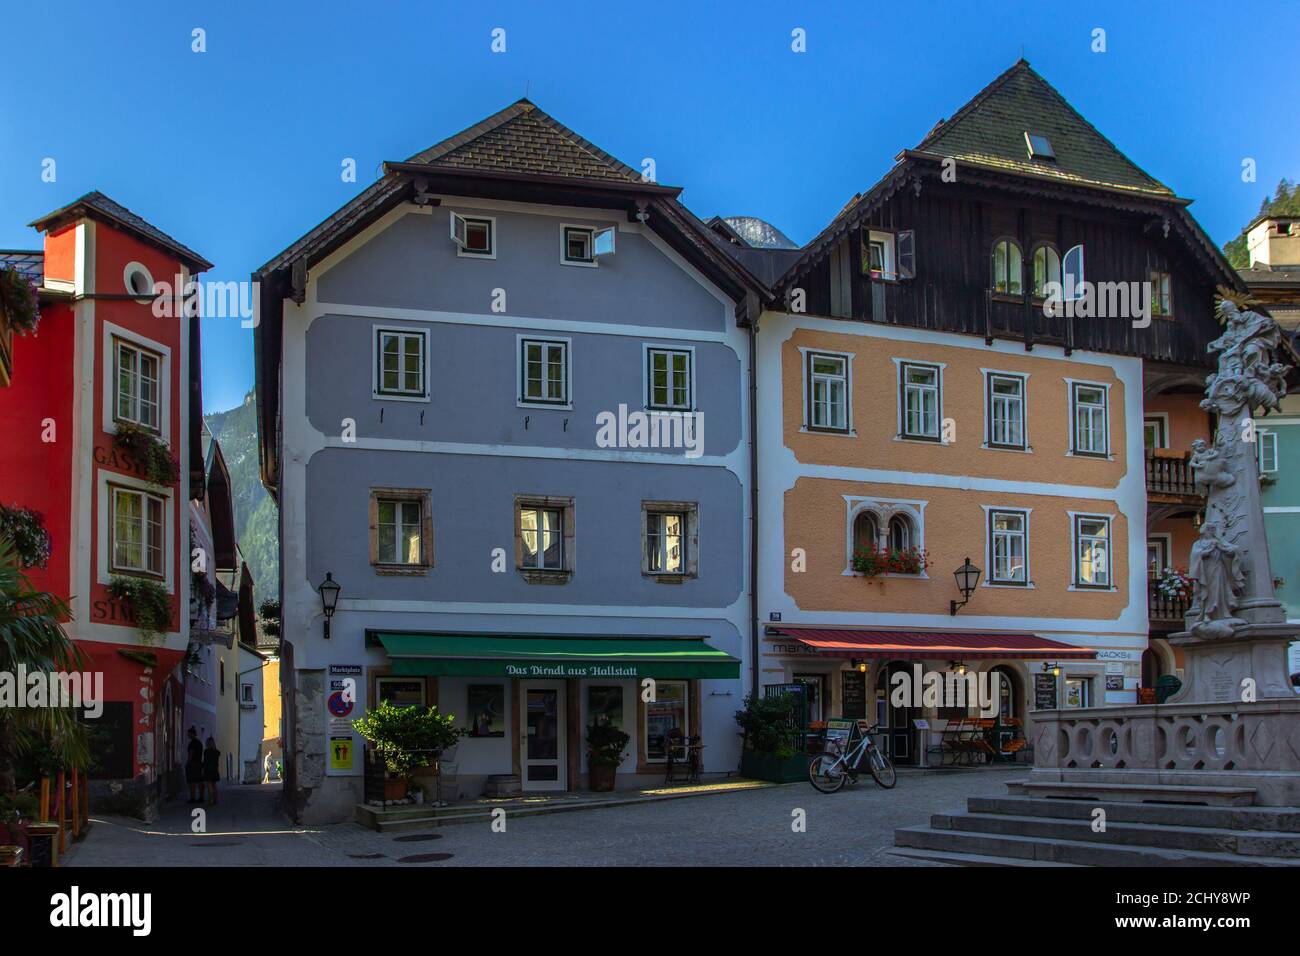 Hallstatt, Austria - 10 agosto 2020. Famosa e bella città montana austriaca con case in legno situata nella regione di Salzkammergut. Sito europeo dell'UNESCO Foto Stock